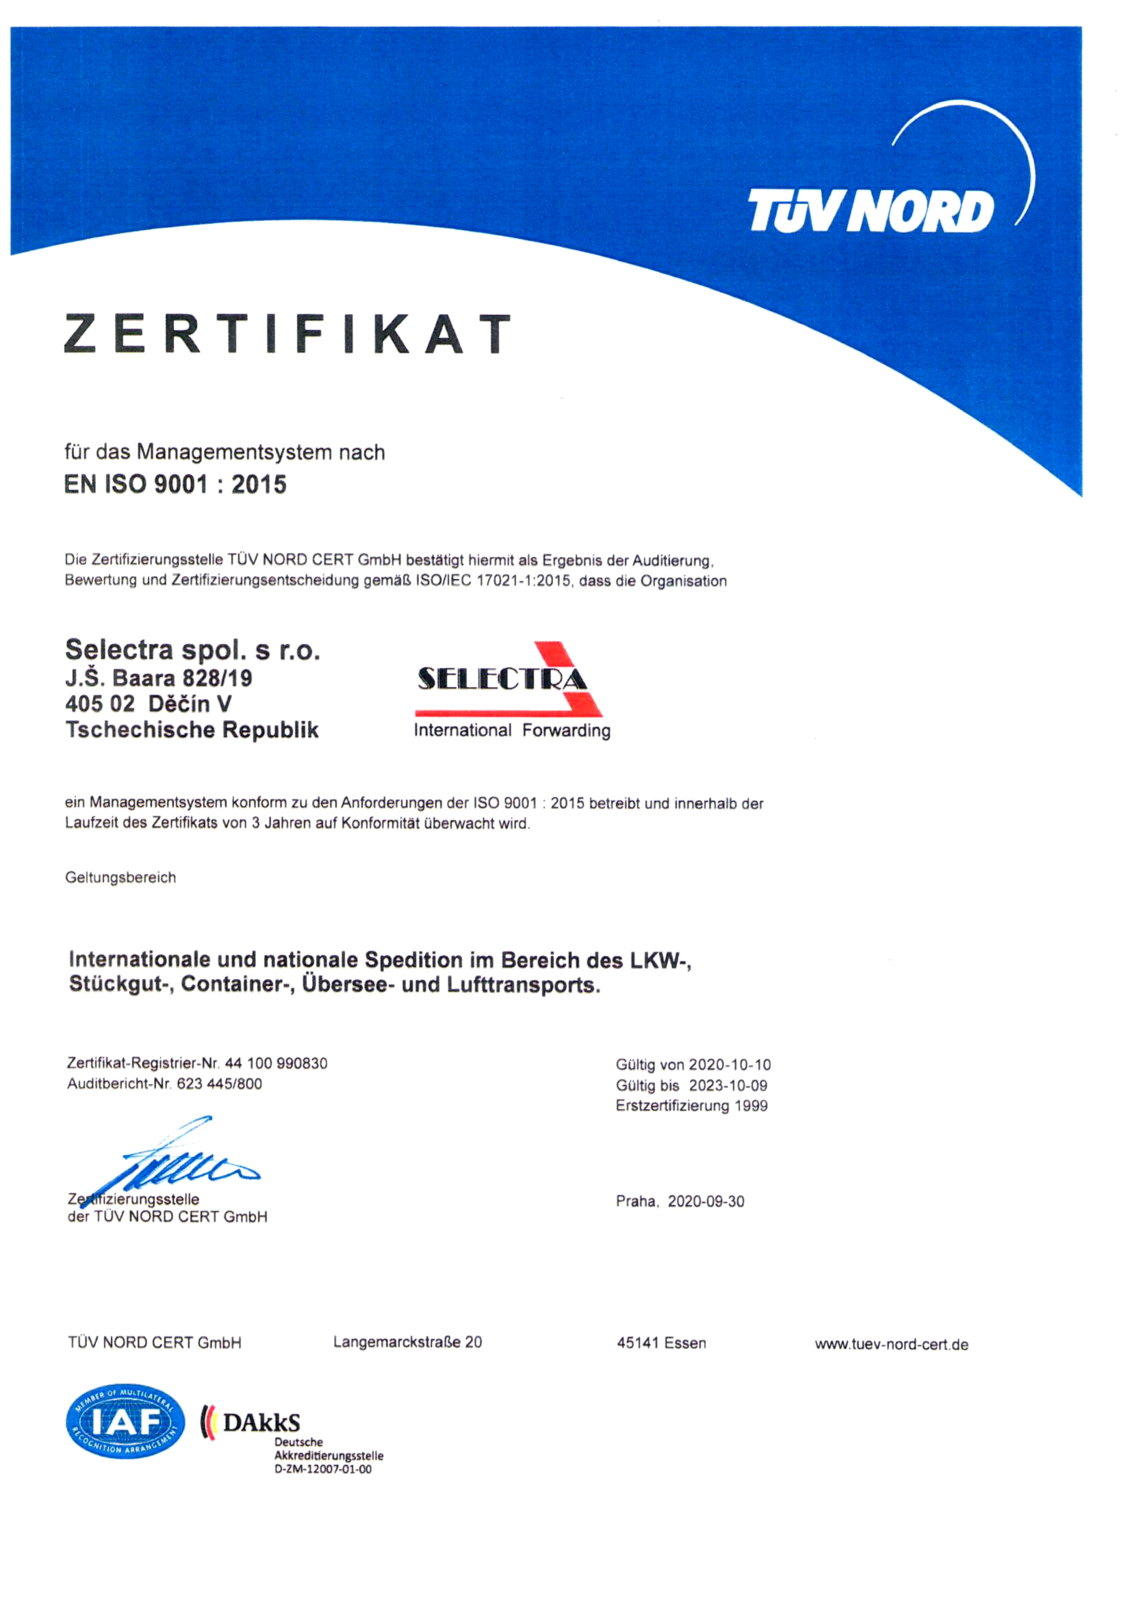 ISO Certifikát 20201010 DE.png